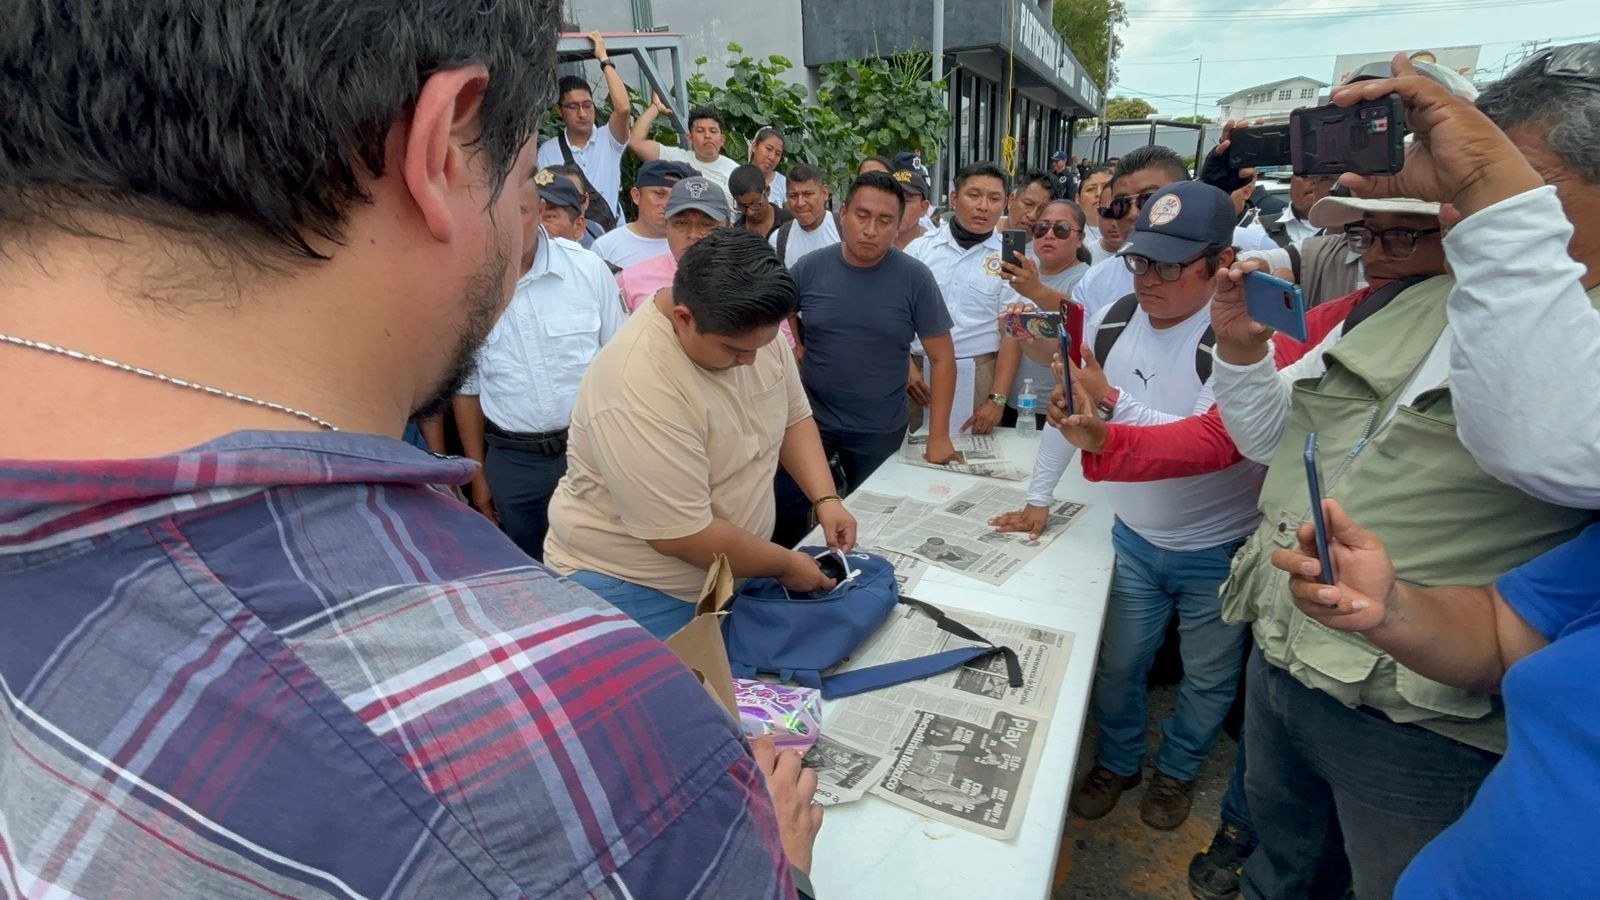 Los empleados de la policía de Campeche llevaban equipos telefónicos, discos duros, chips de telefonía, entre otros objetos